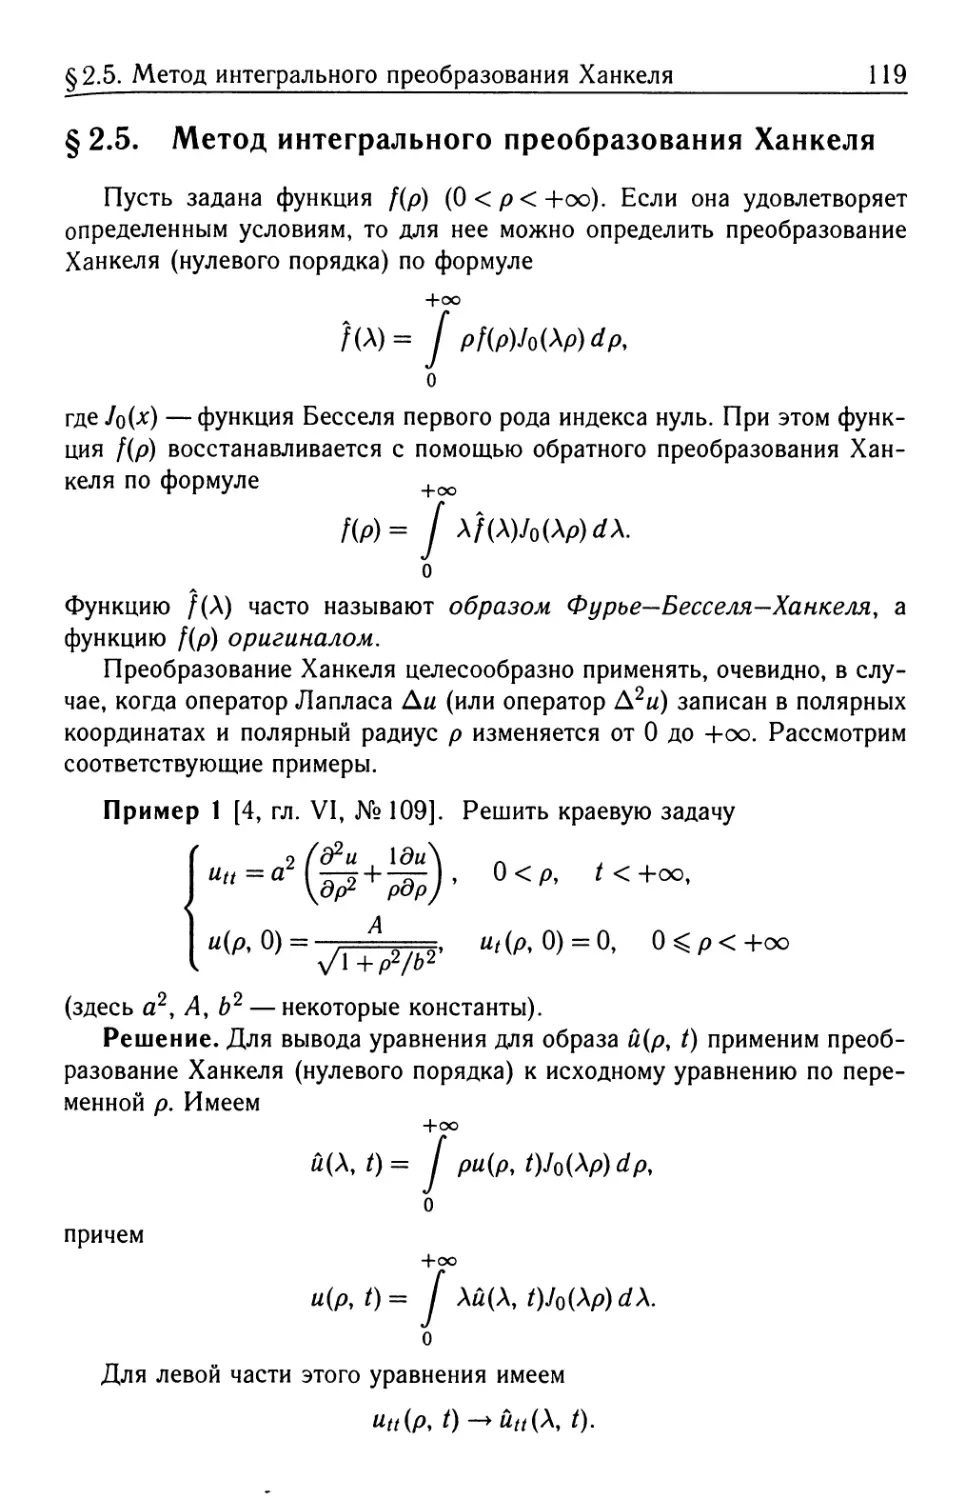 § 2.5. Метод интегрального преобразования Ханкеля